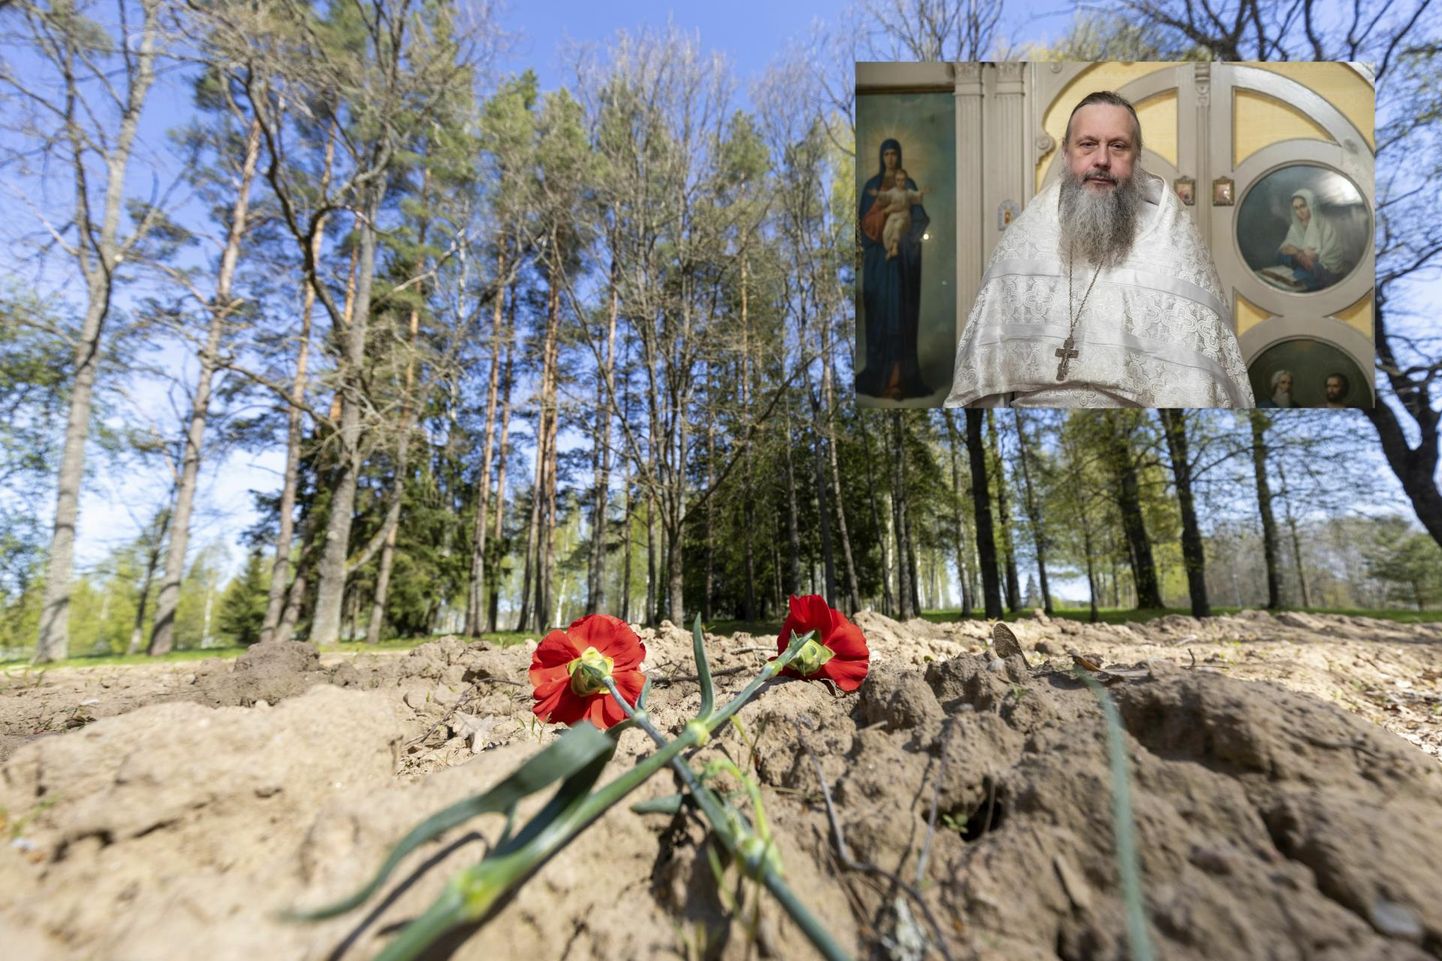 Священник православной церкви провел поминальную службу на месте бывшего советского монумента.